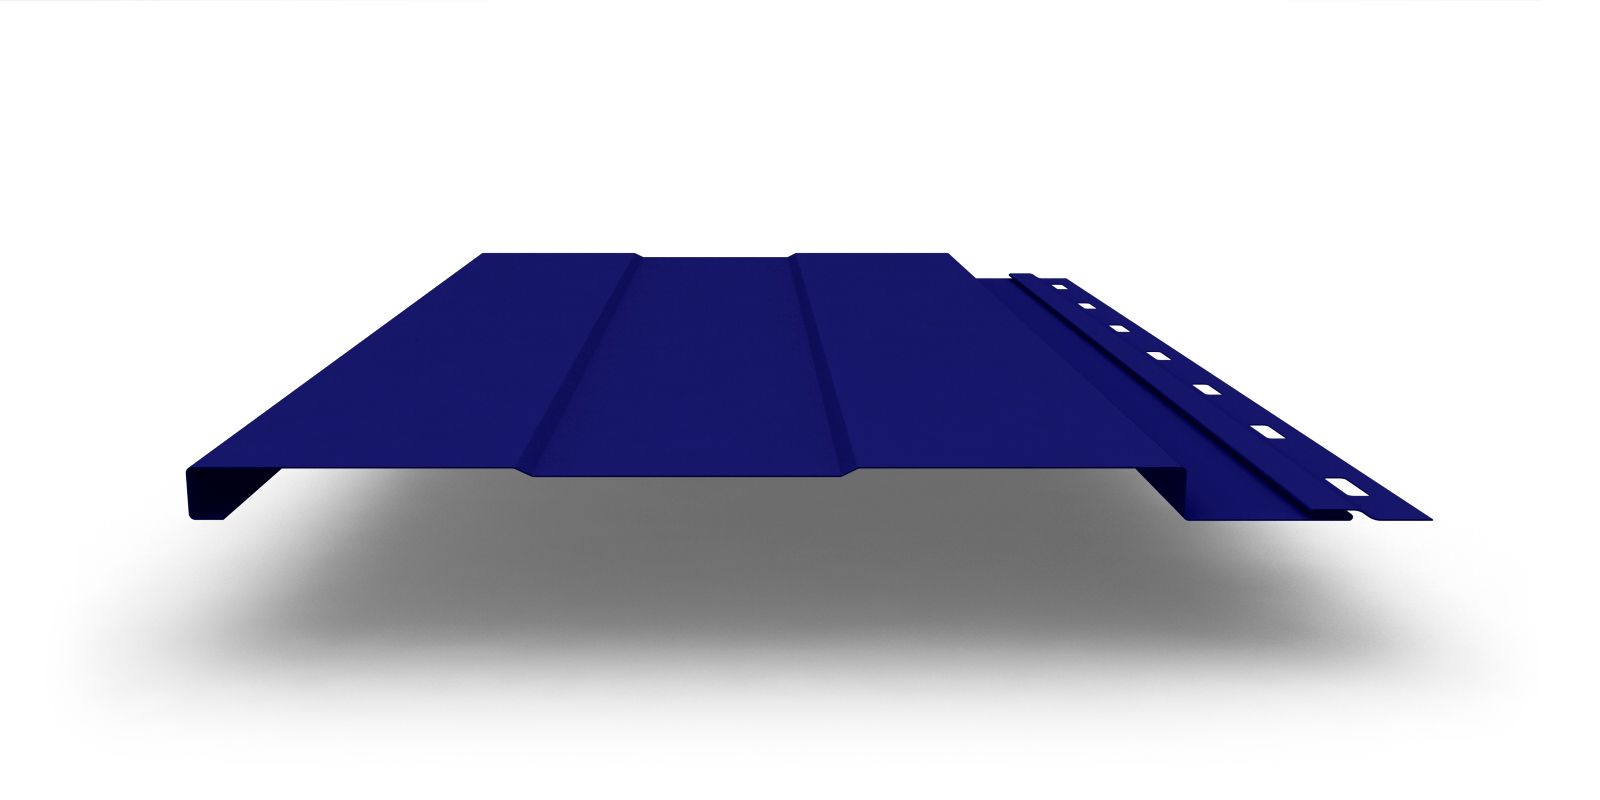 Металлический сайдинг Фасадная панель с покрытием Полиэстер, 0,45 мм, изображение, фото | Сталь ТД